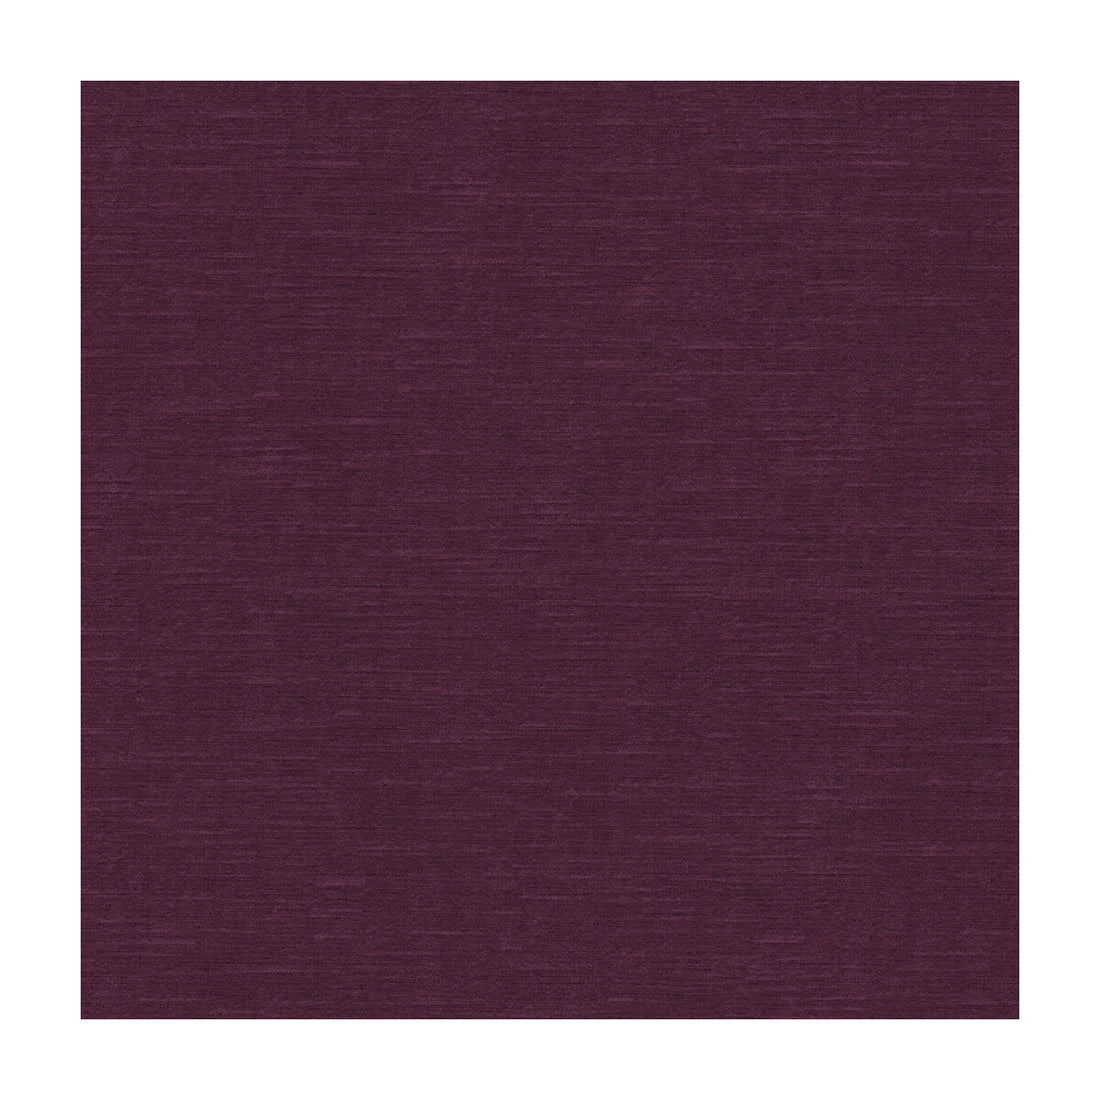 Venetian fabric in merlot color - pattern 31326.1099.0 - by Kravet Design